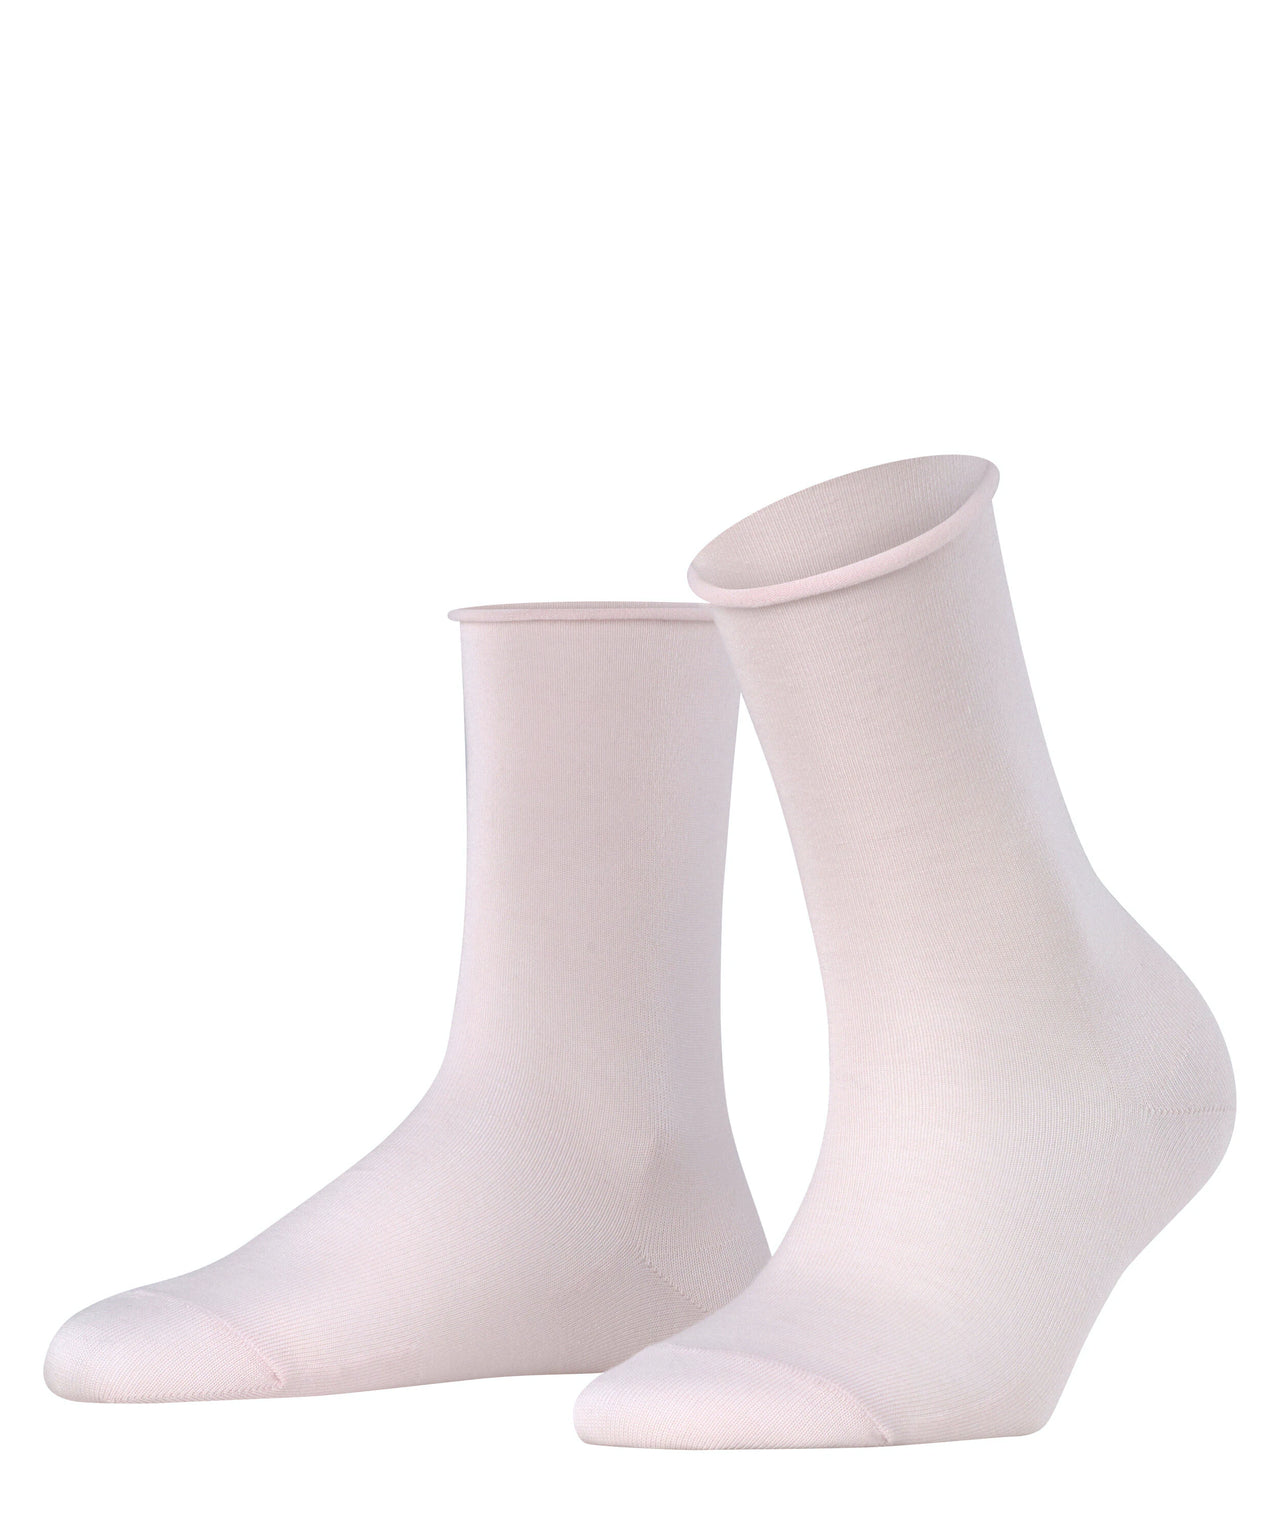 Falke Active Breeze Women's Socks - Light Pink